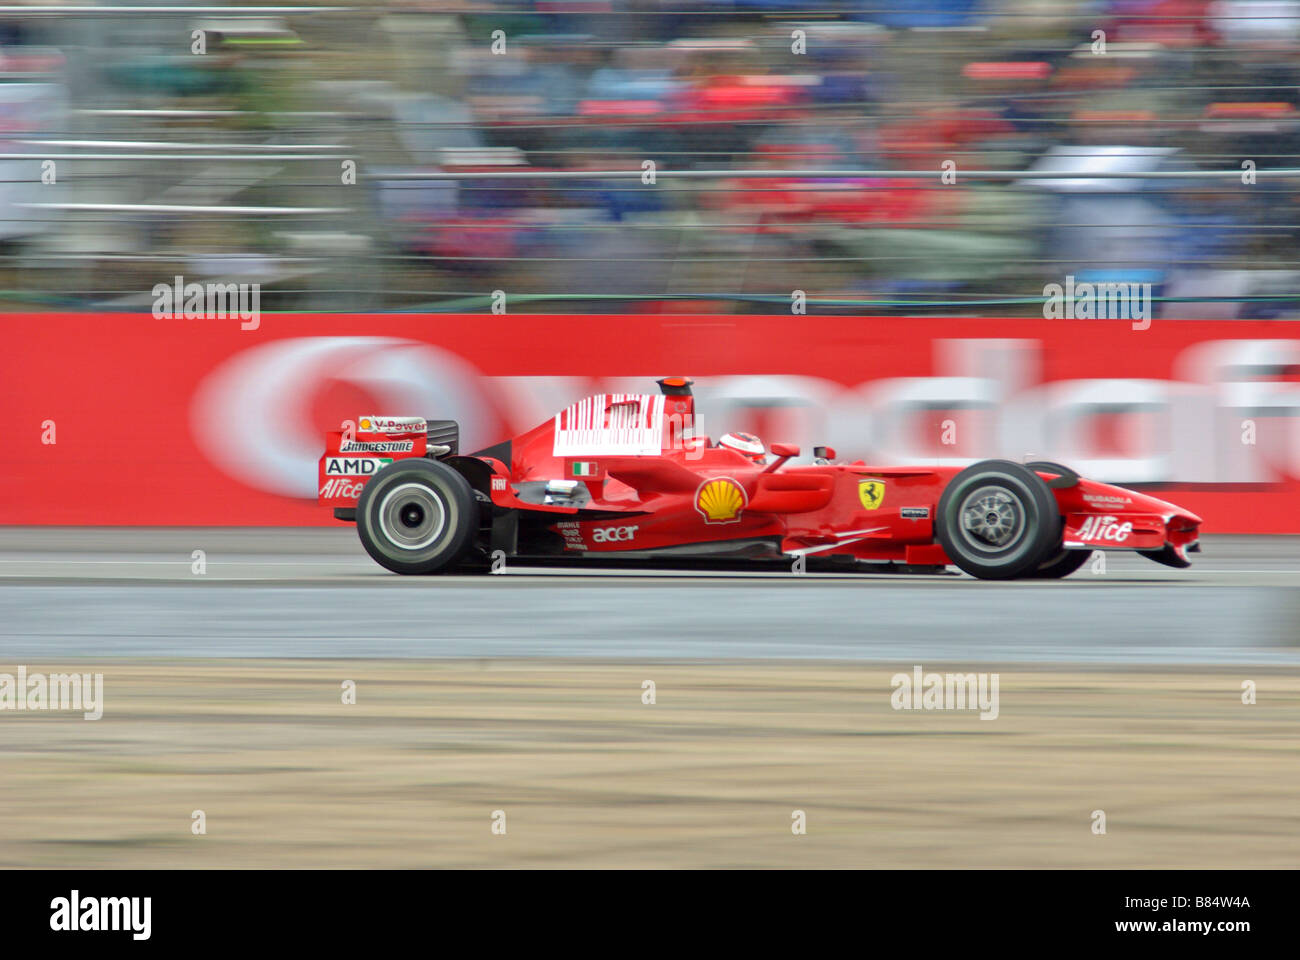 Kimi Raikkonen at the British Grand Prix 2008 Stock Photo